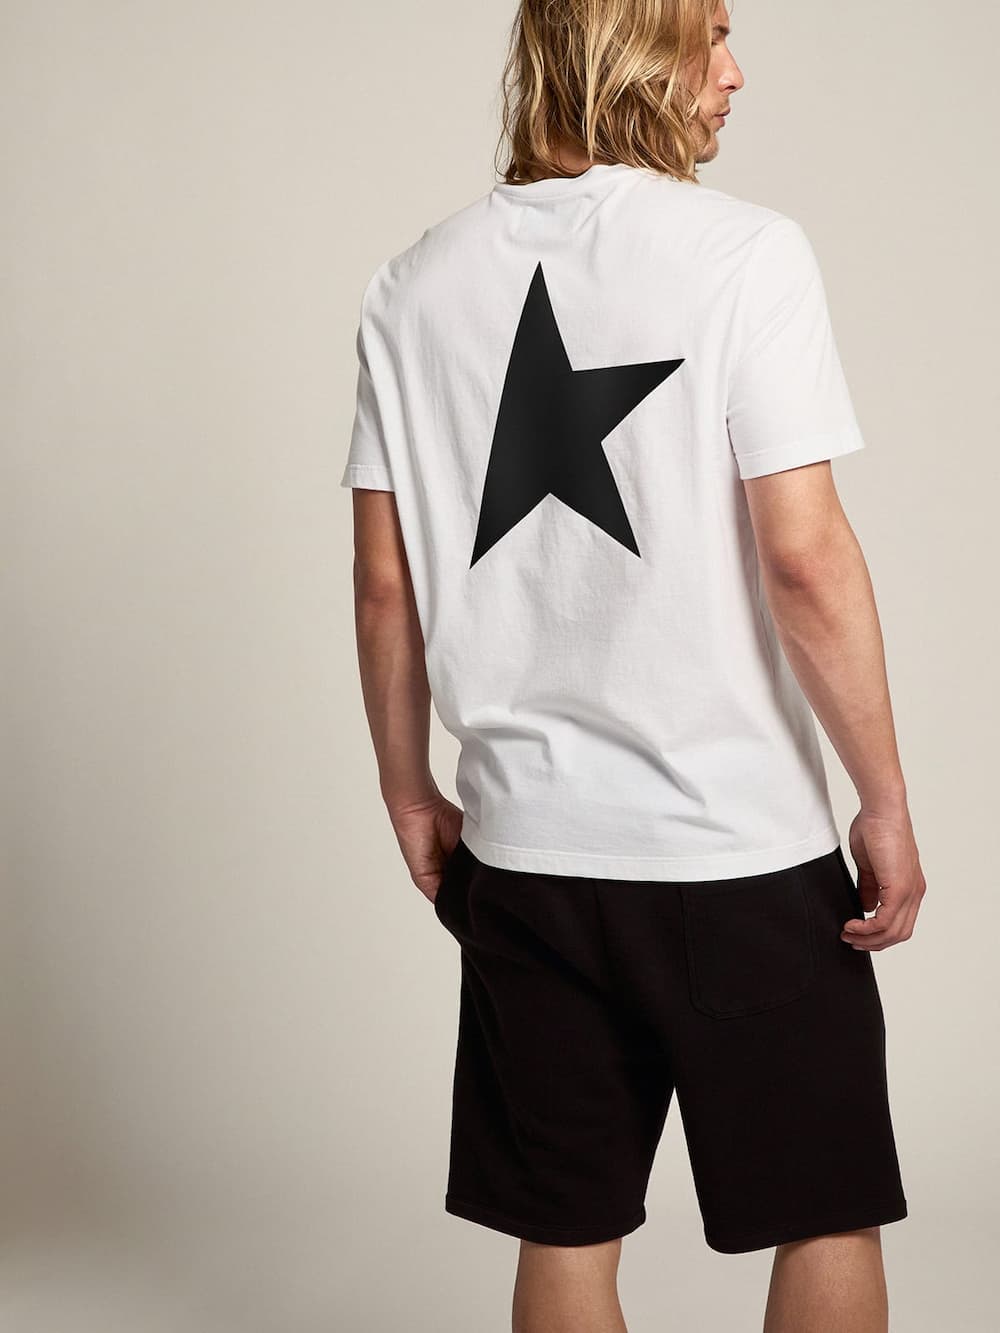 Golden Goose - Weißes T-Shirt aus der Star Collection mit Logo und Stern in kontrastierendem Schwarz in 